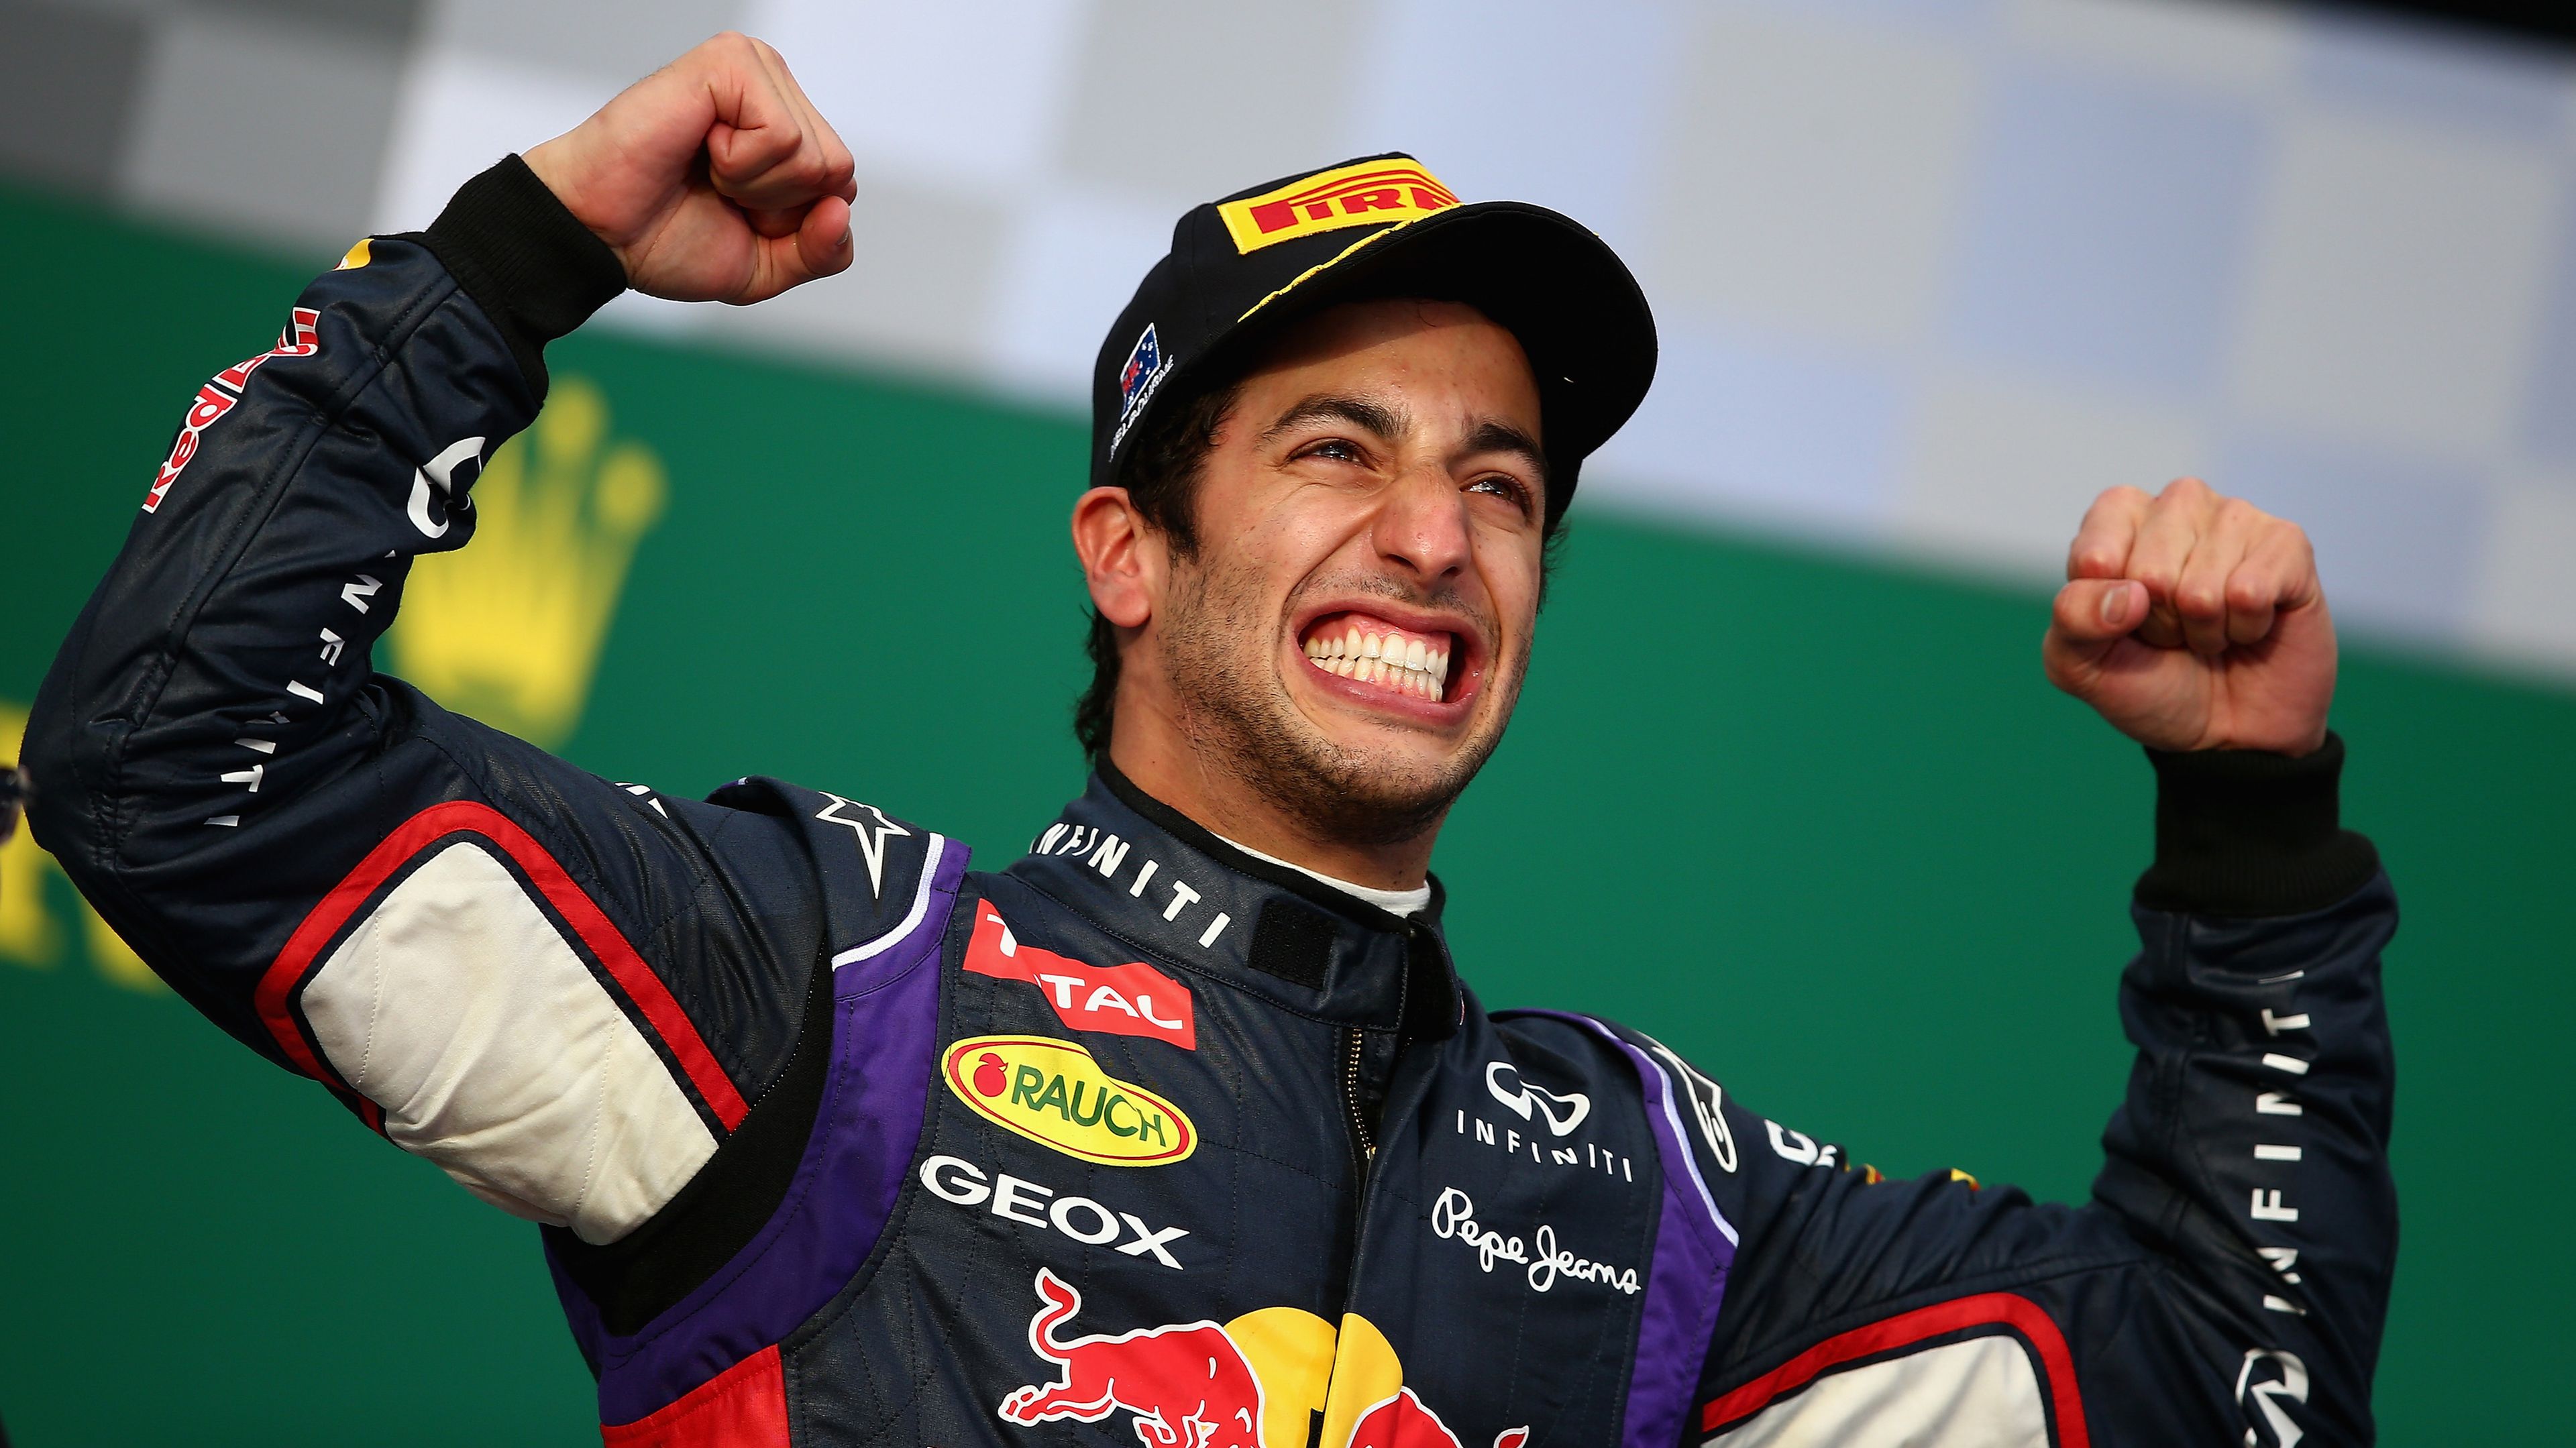 Daniel Ricciardo stands on the podium in the 2014 Australian Grand Prix.